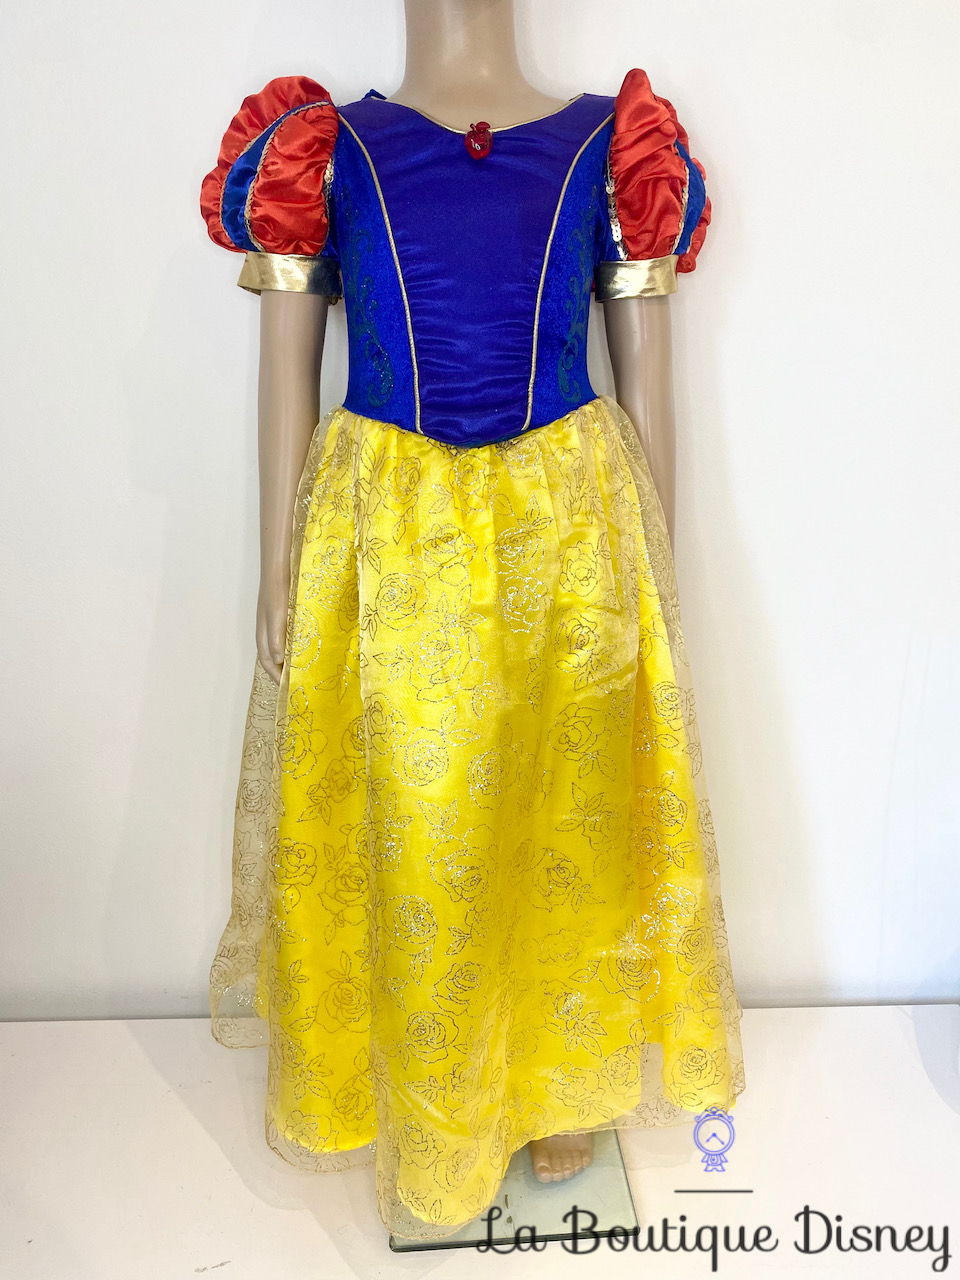 Déguisement Blanche Neige Disneyland Paris Disney taille 6 ans robe  princesse bleu jaune paillettes pomme